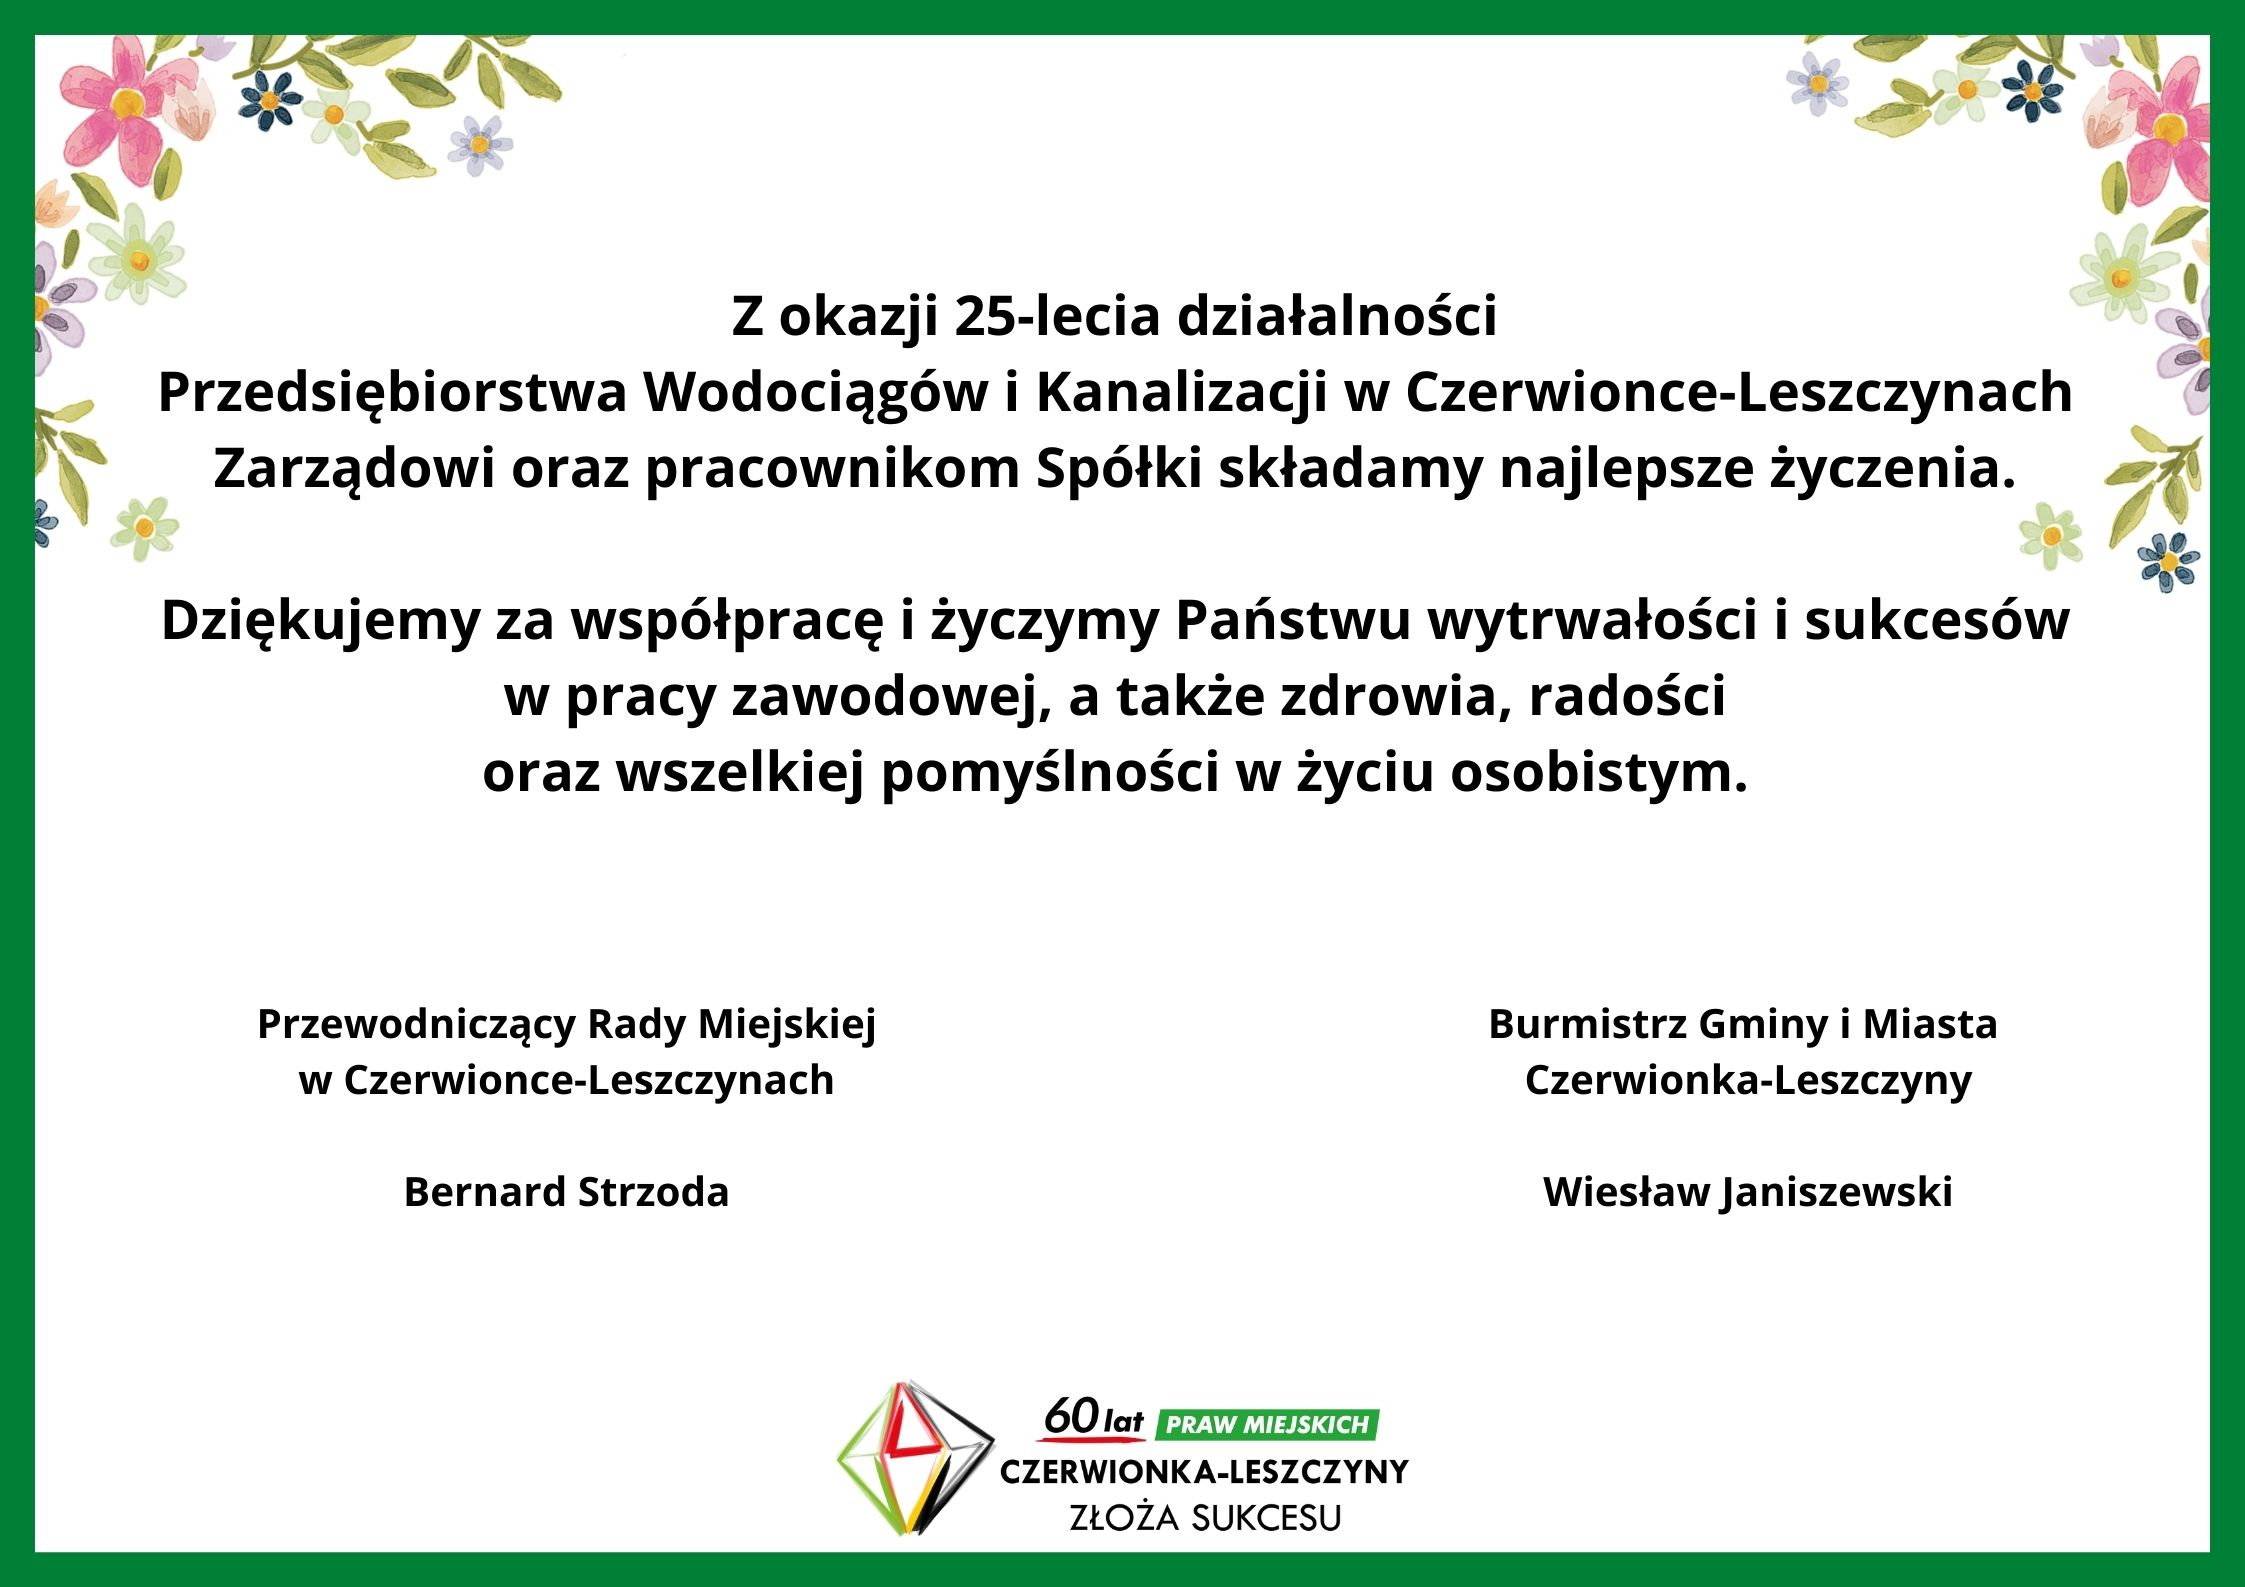 Życzenia z okazji 25-lecia działalności Przedsiębiorstwa Wodociągów i Kanalizacji w Czerwionce-Leszczynach